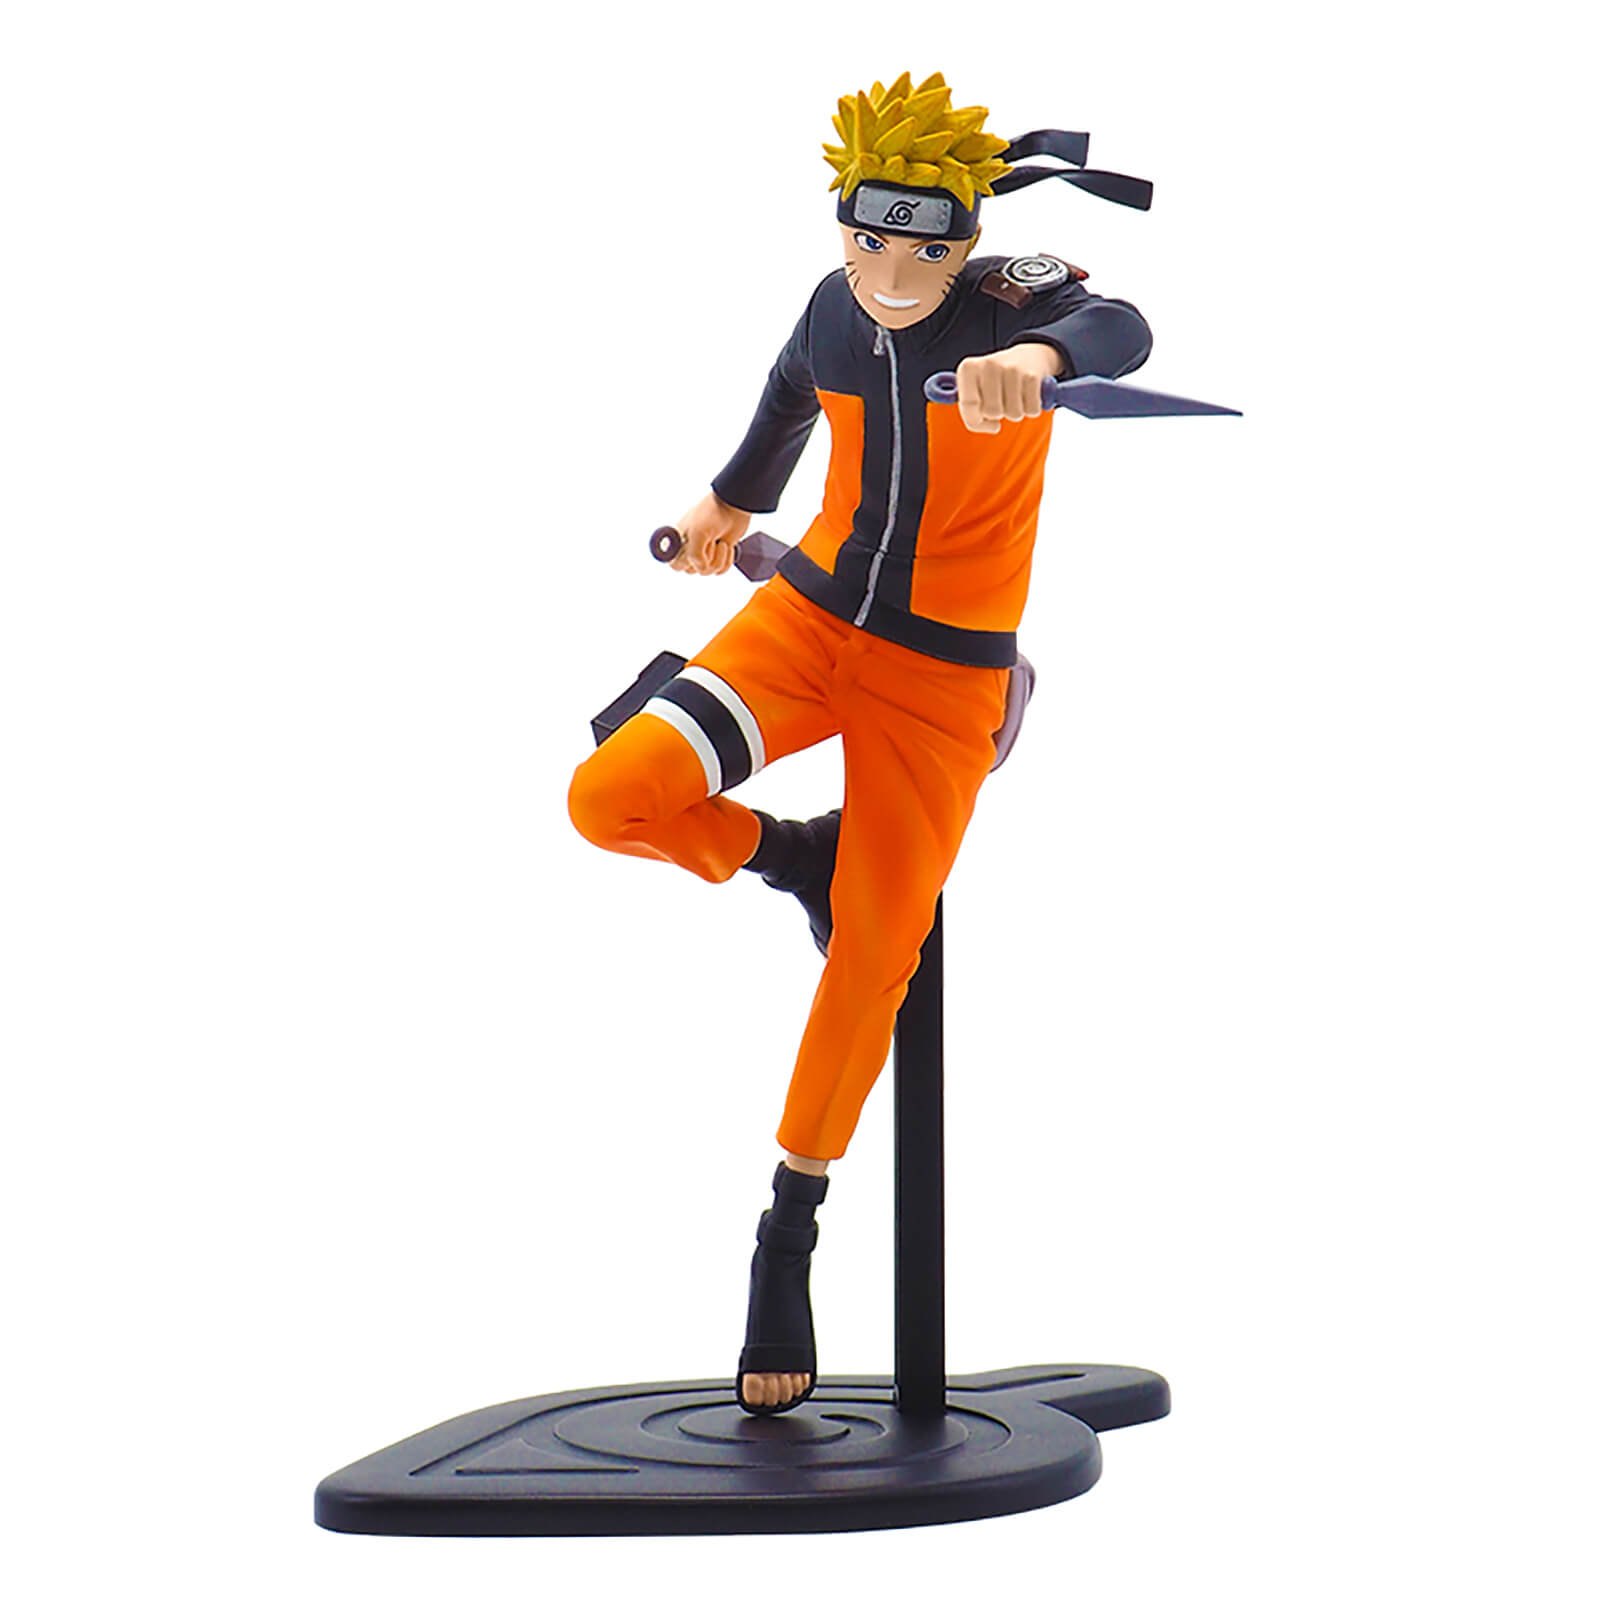 Naruto Shippuden Naruto Figurine product